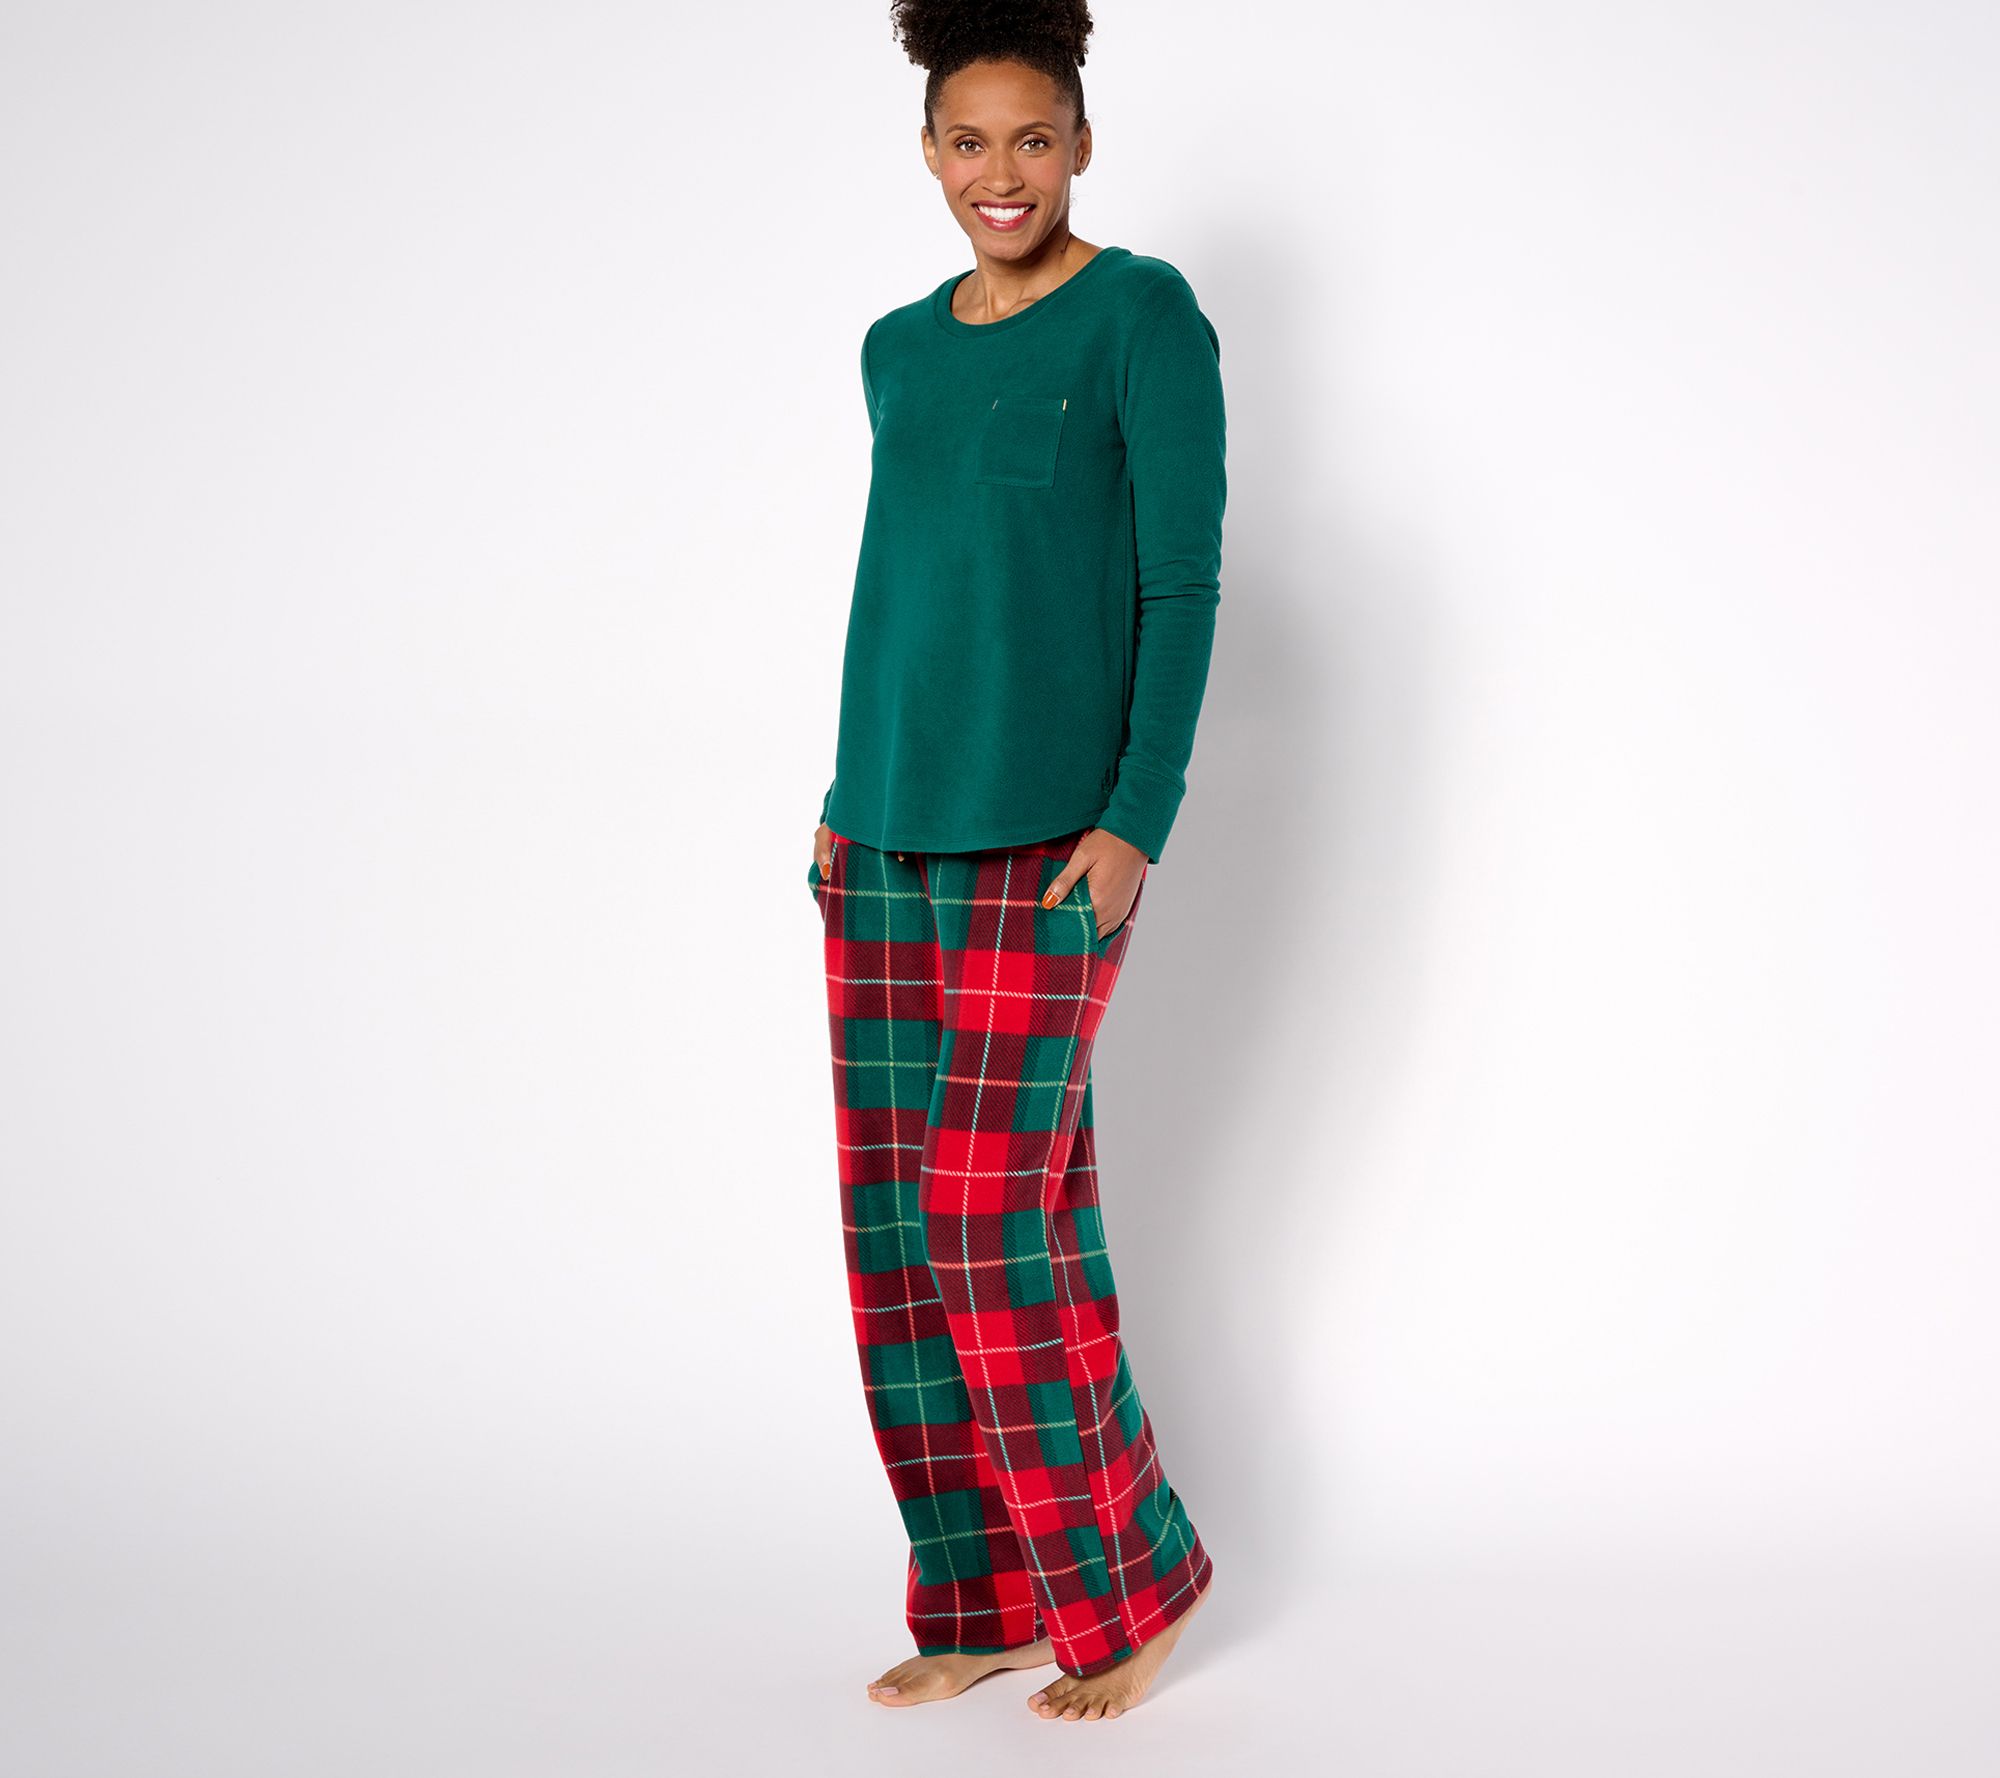 Cuddl Duds Tall Fleecewear with Stretch Pajama Set 